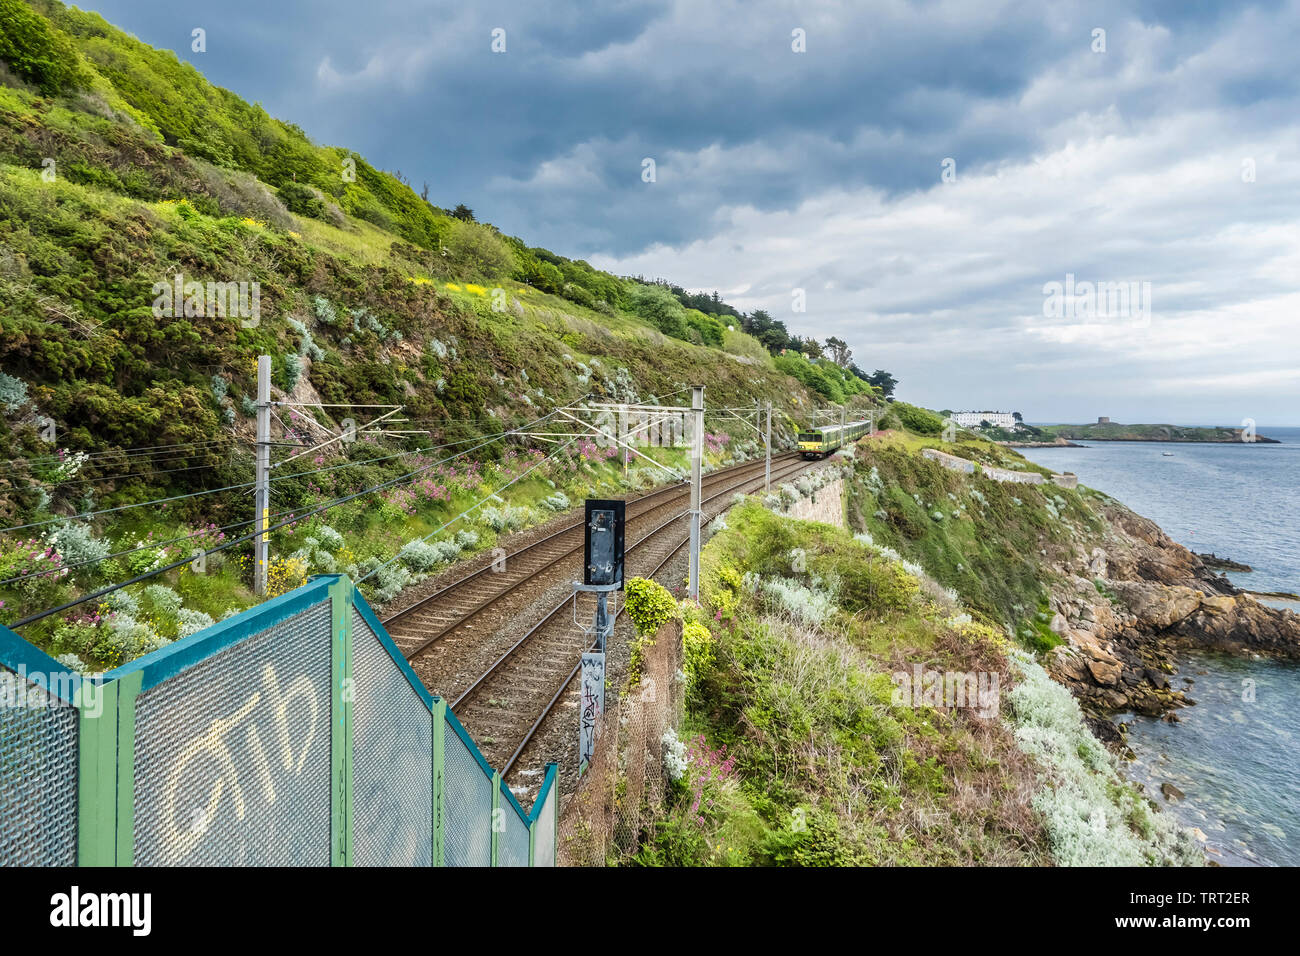 Railway track beside Killiney Bay, County Dublin, Ireland with Dublin DART train approaching Killiney from the north Stock Photo